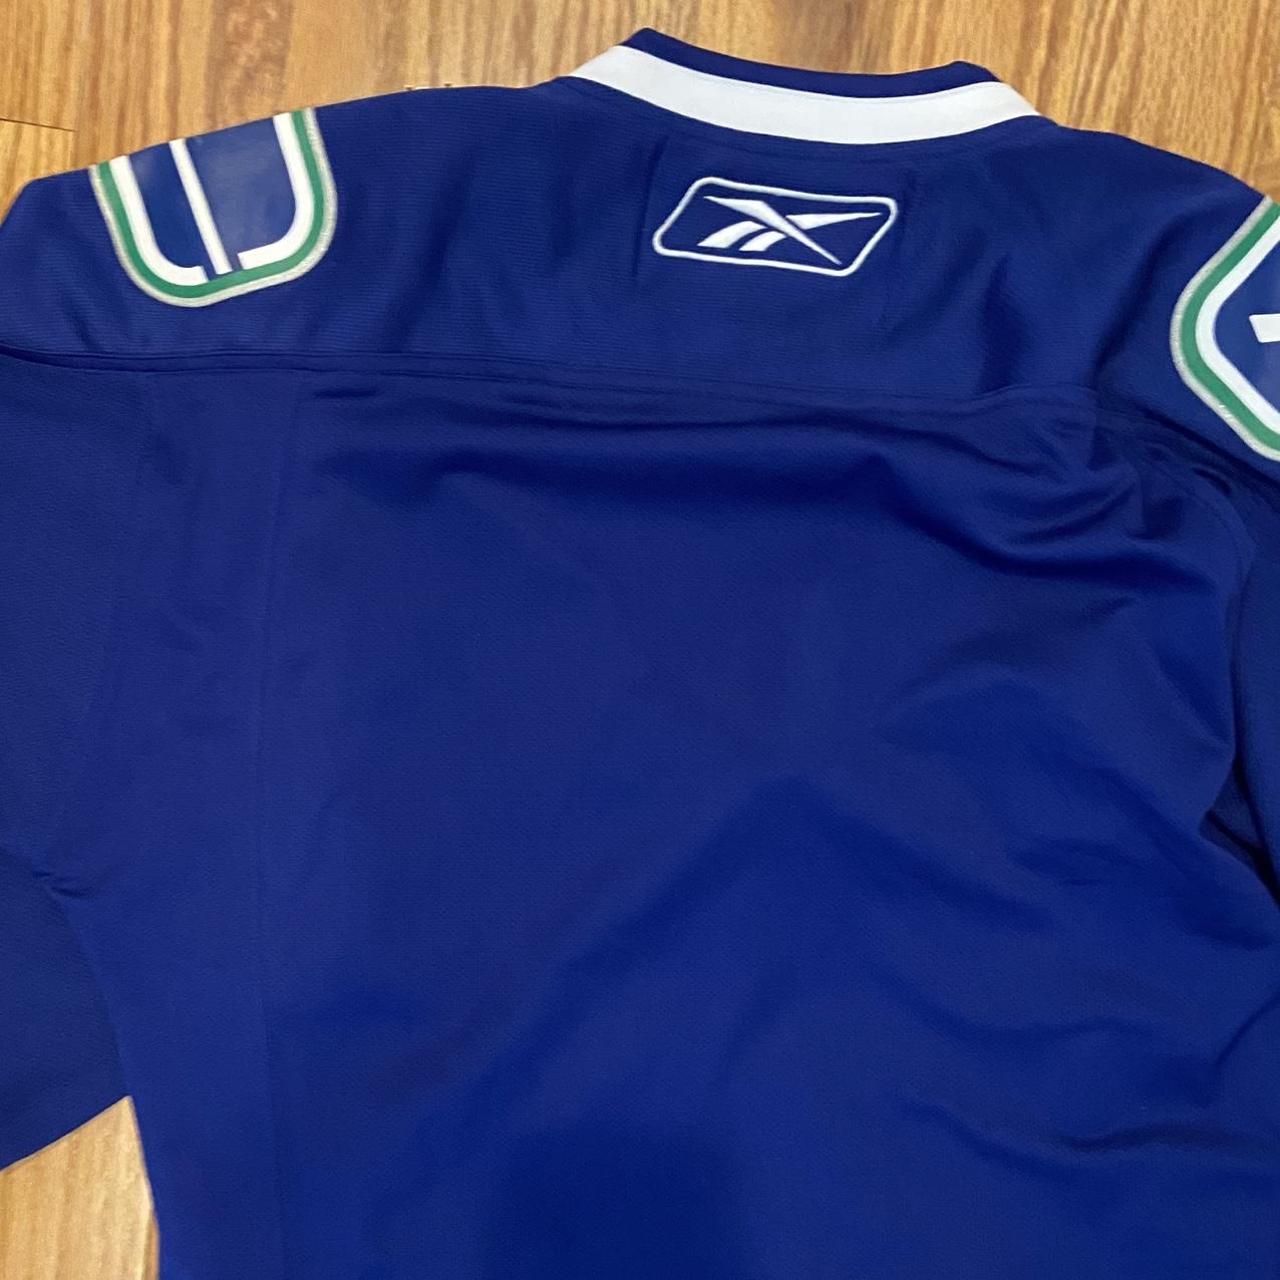 Vintage Vancouver Canucks Pro Player Jersey size M - Depop